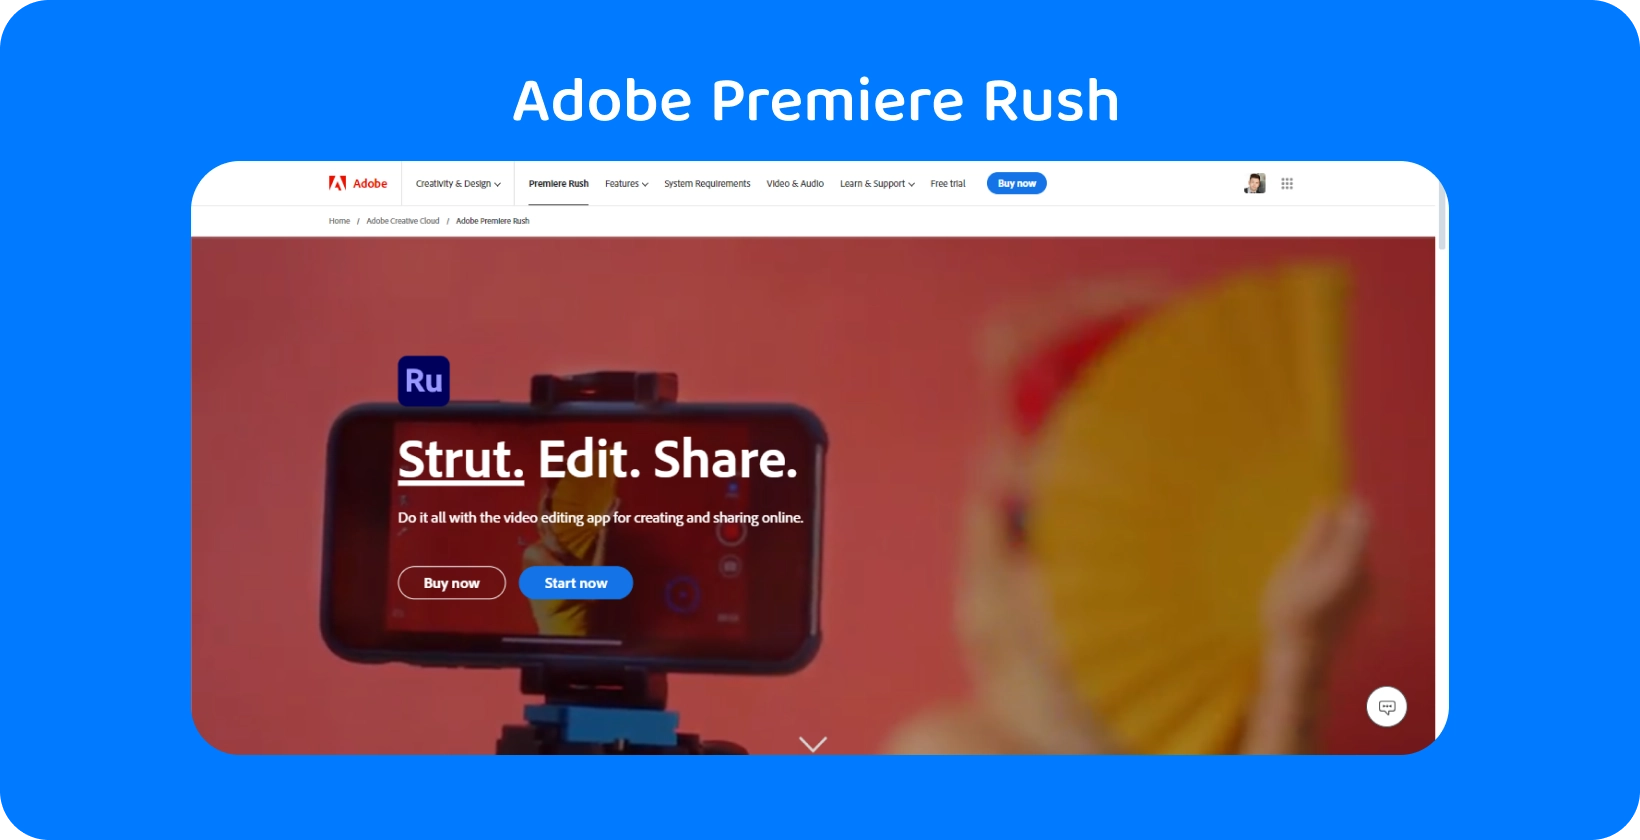 Adobe Premiere Rush na chytrém telefonu upevněném na stativu se sloganem "Strut. Edit. Share." pro střih videa.